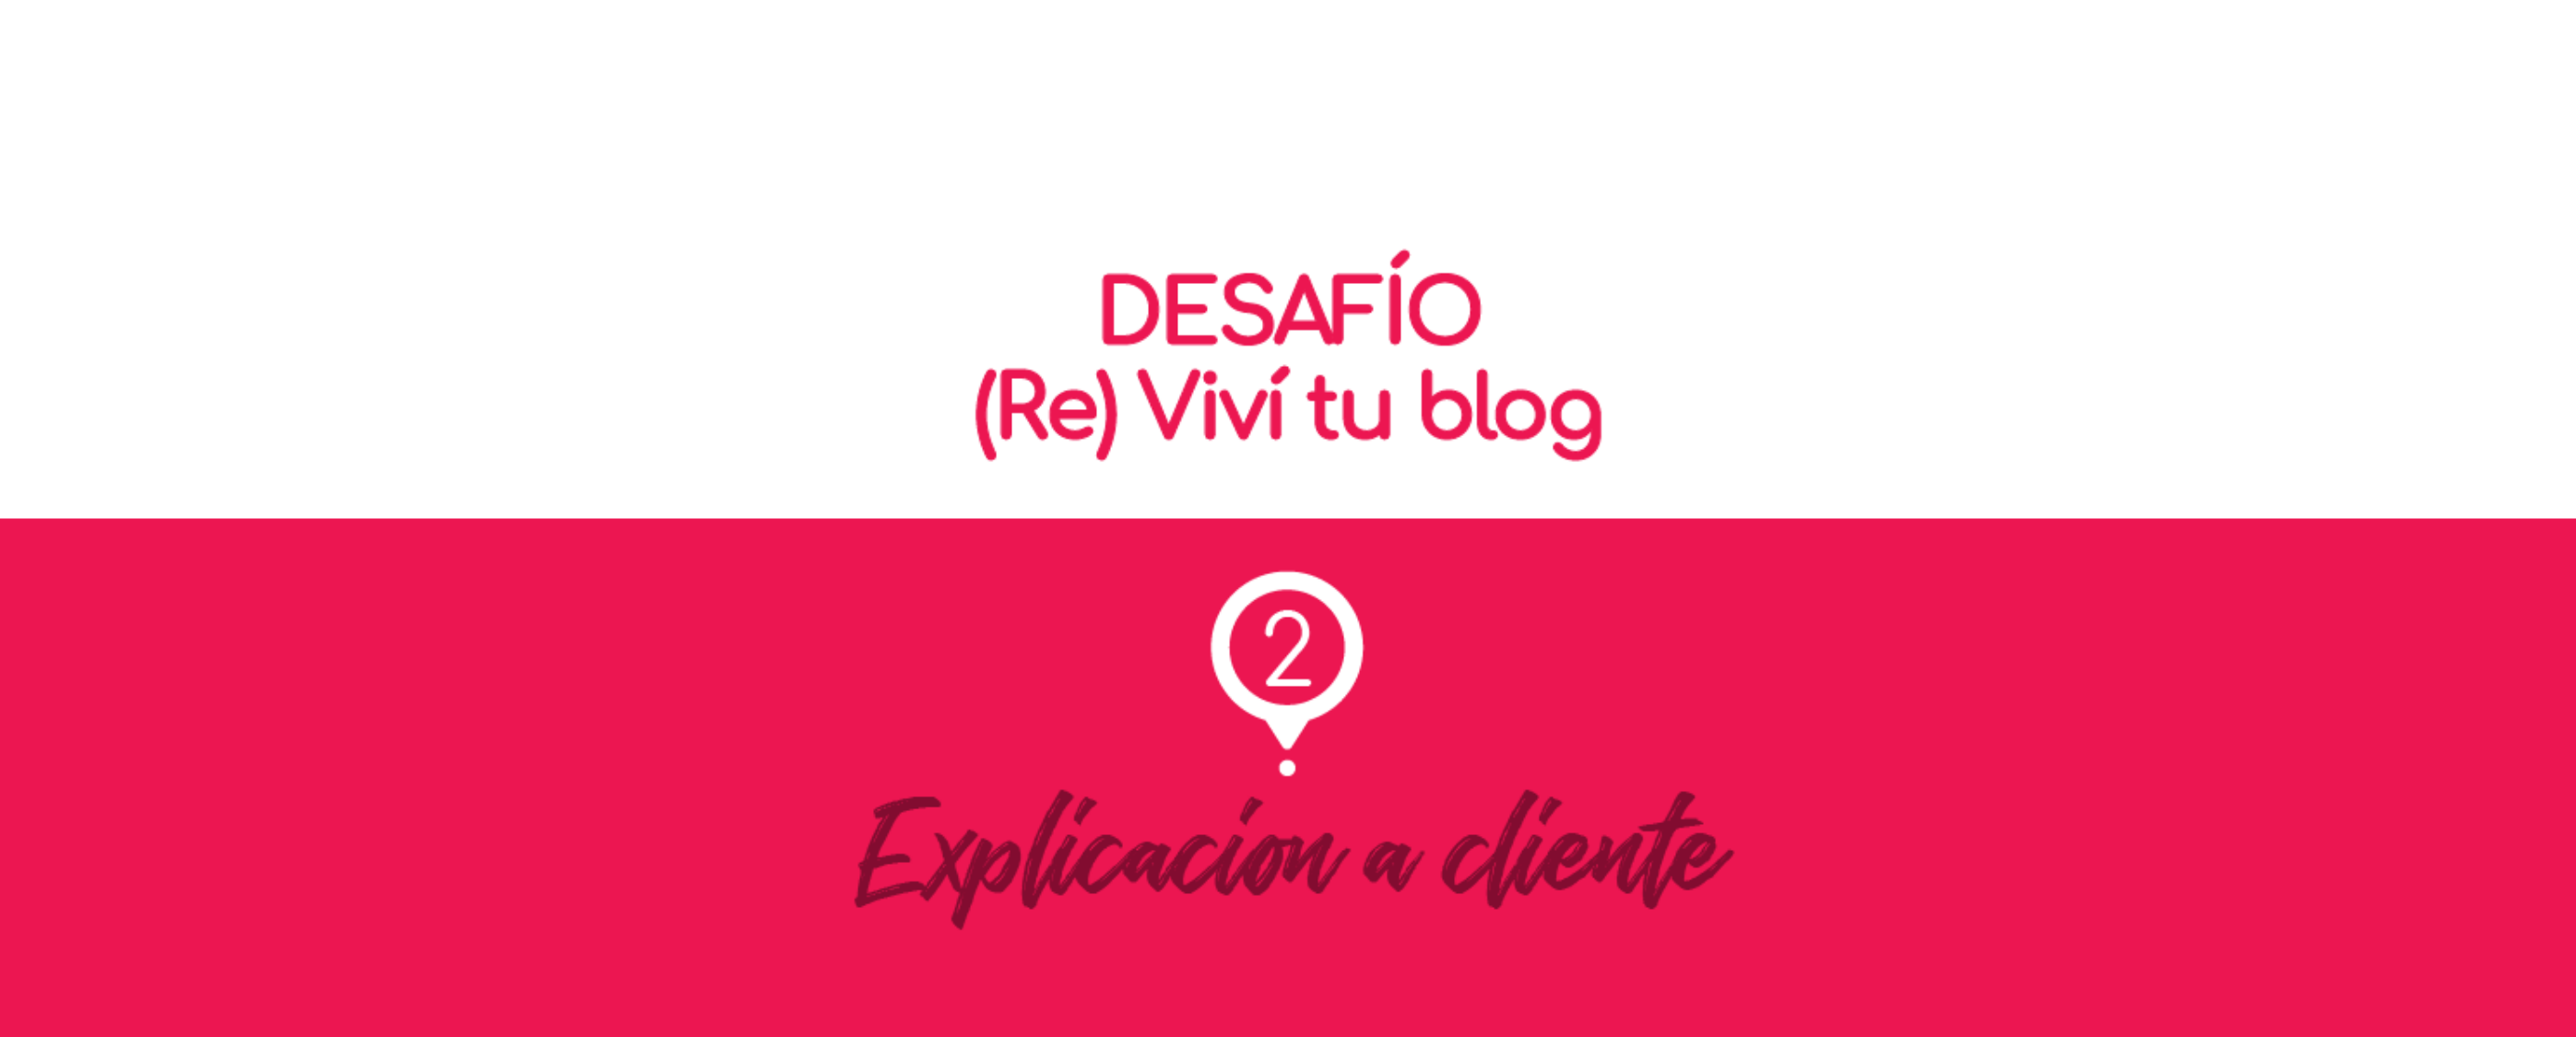 – 2 – (Re) Viví tu blog: explicación a cliente.